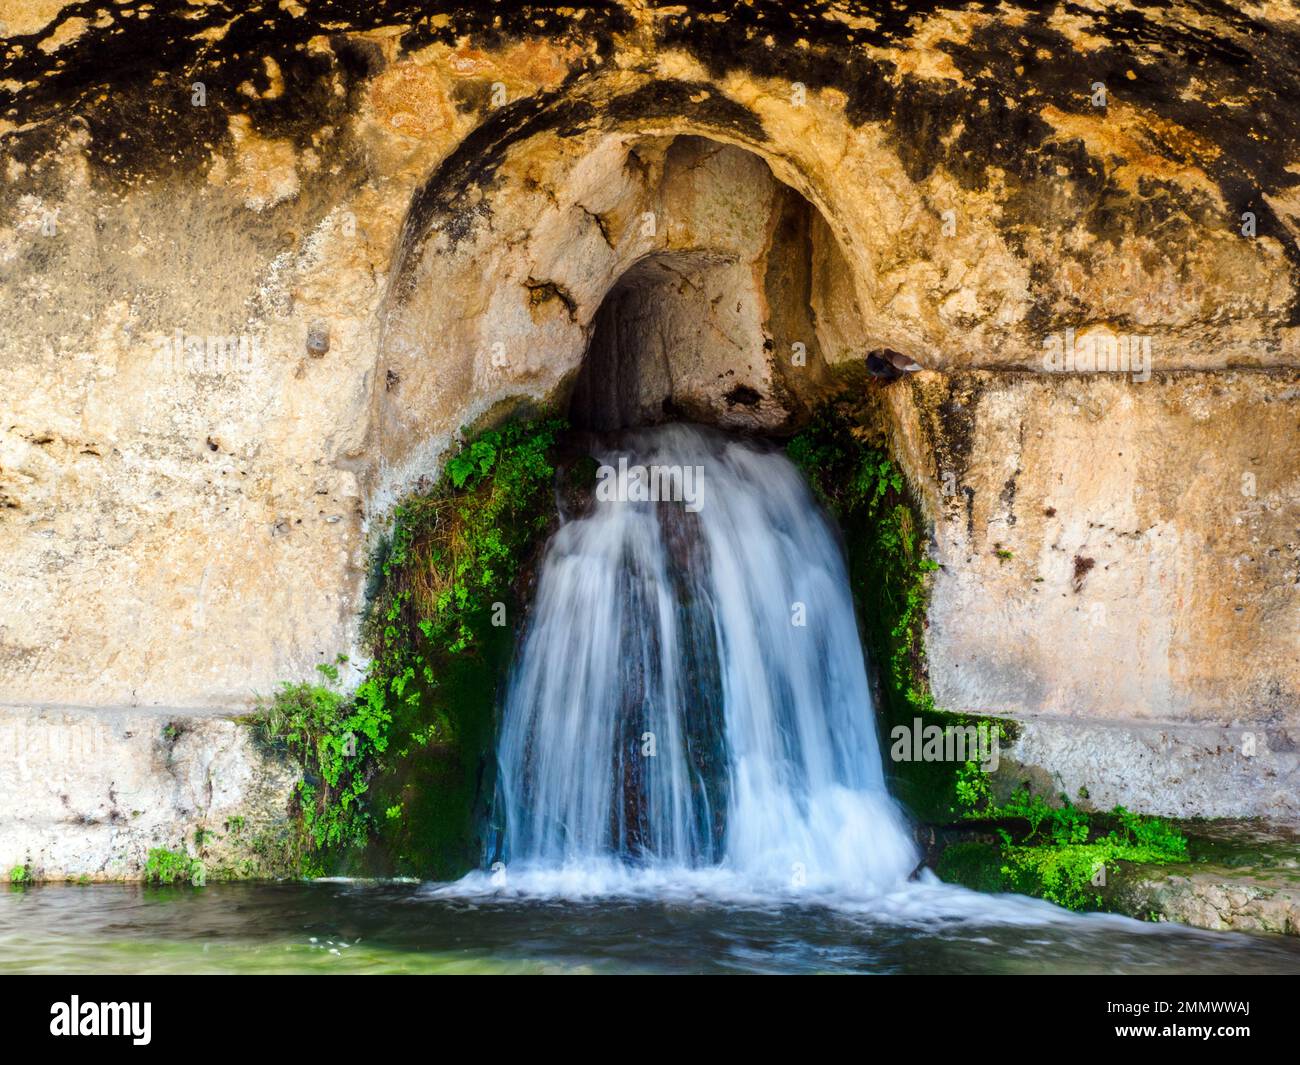 Die Grotta del Ninfeo ist eine künstliche Höhle im Felsen des Temenitenhügels (benannt nach den griechischen Temenos, „bewachsenes Viertel“) - Neapolis Archäologischer Park - Syrakus, Sizilien, Italien Stockfoto